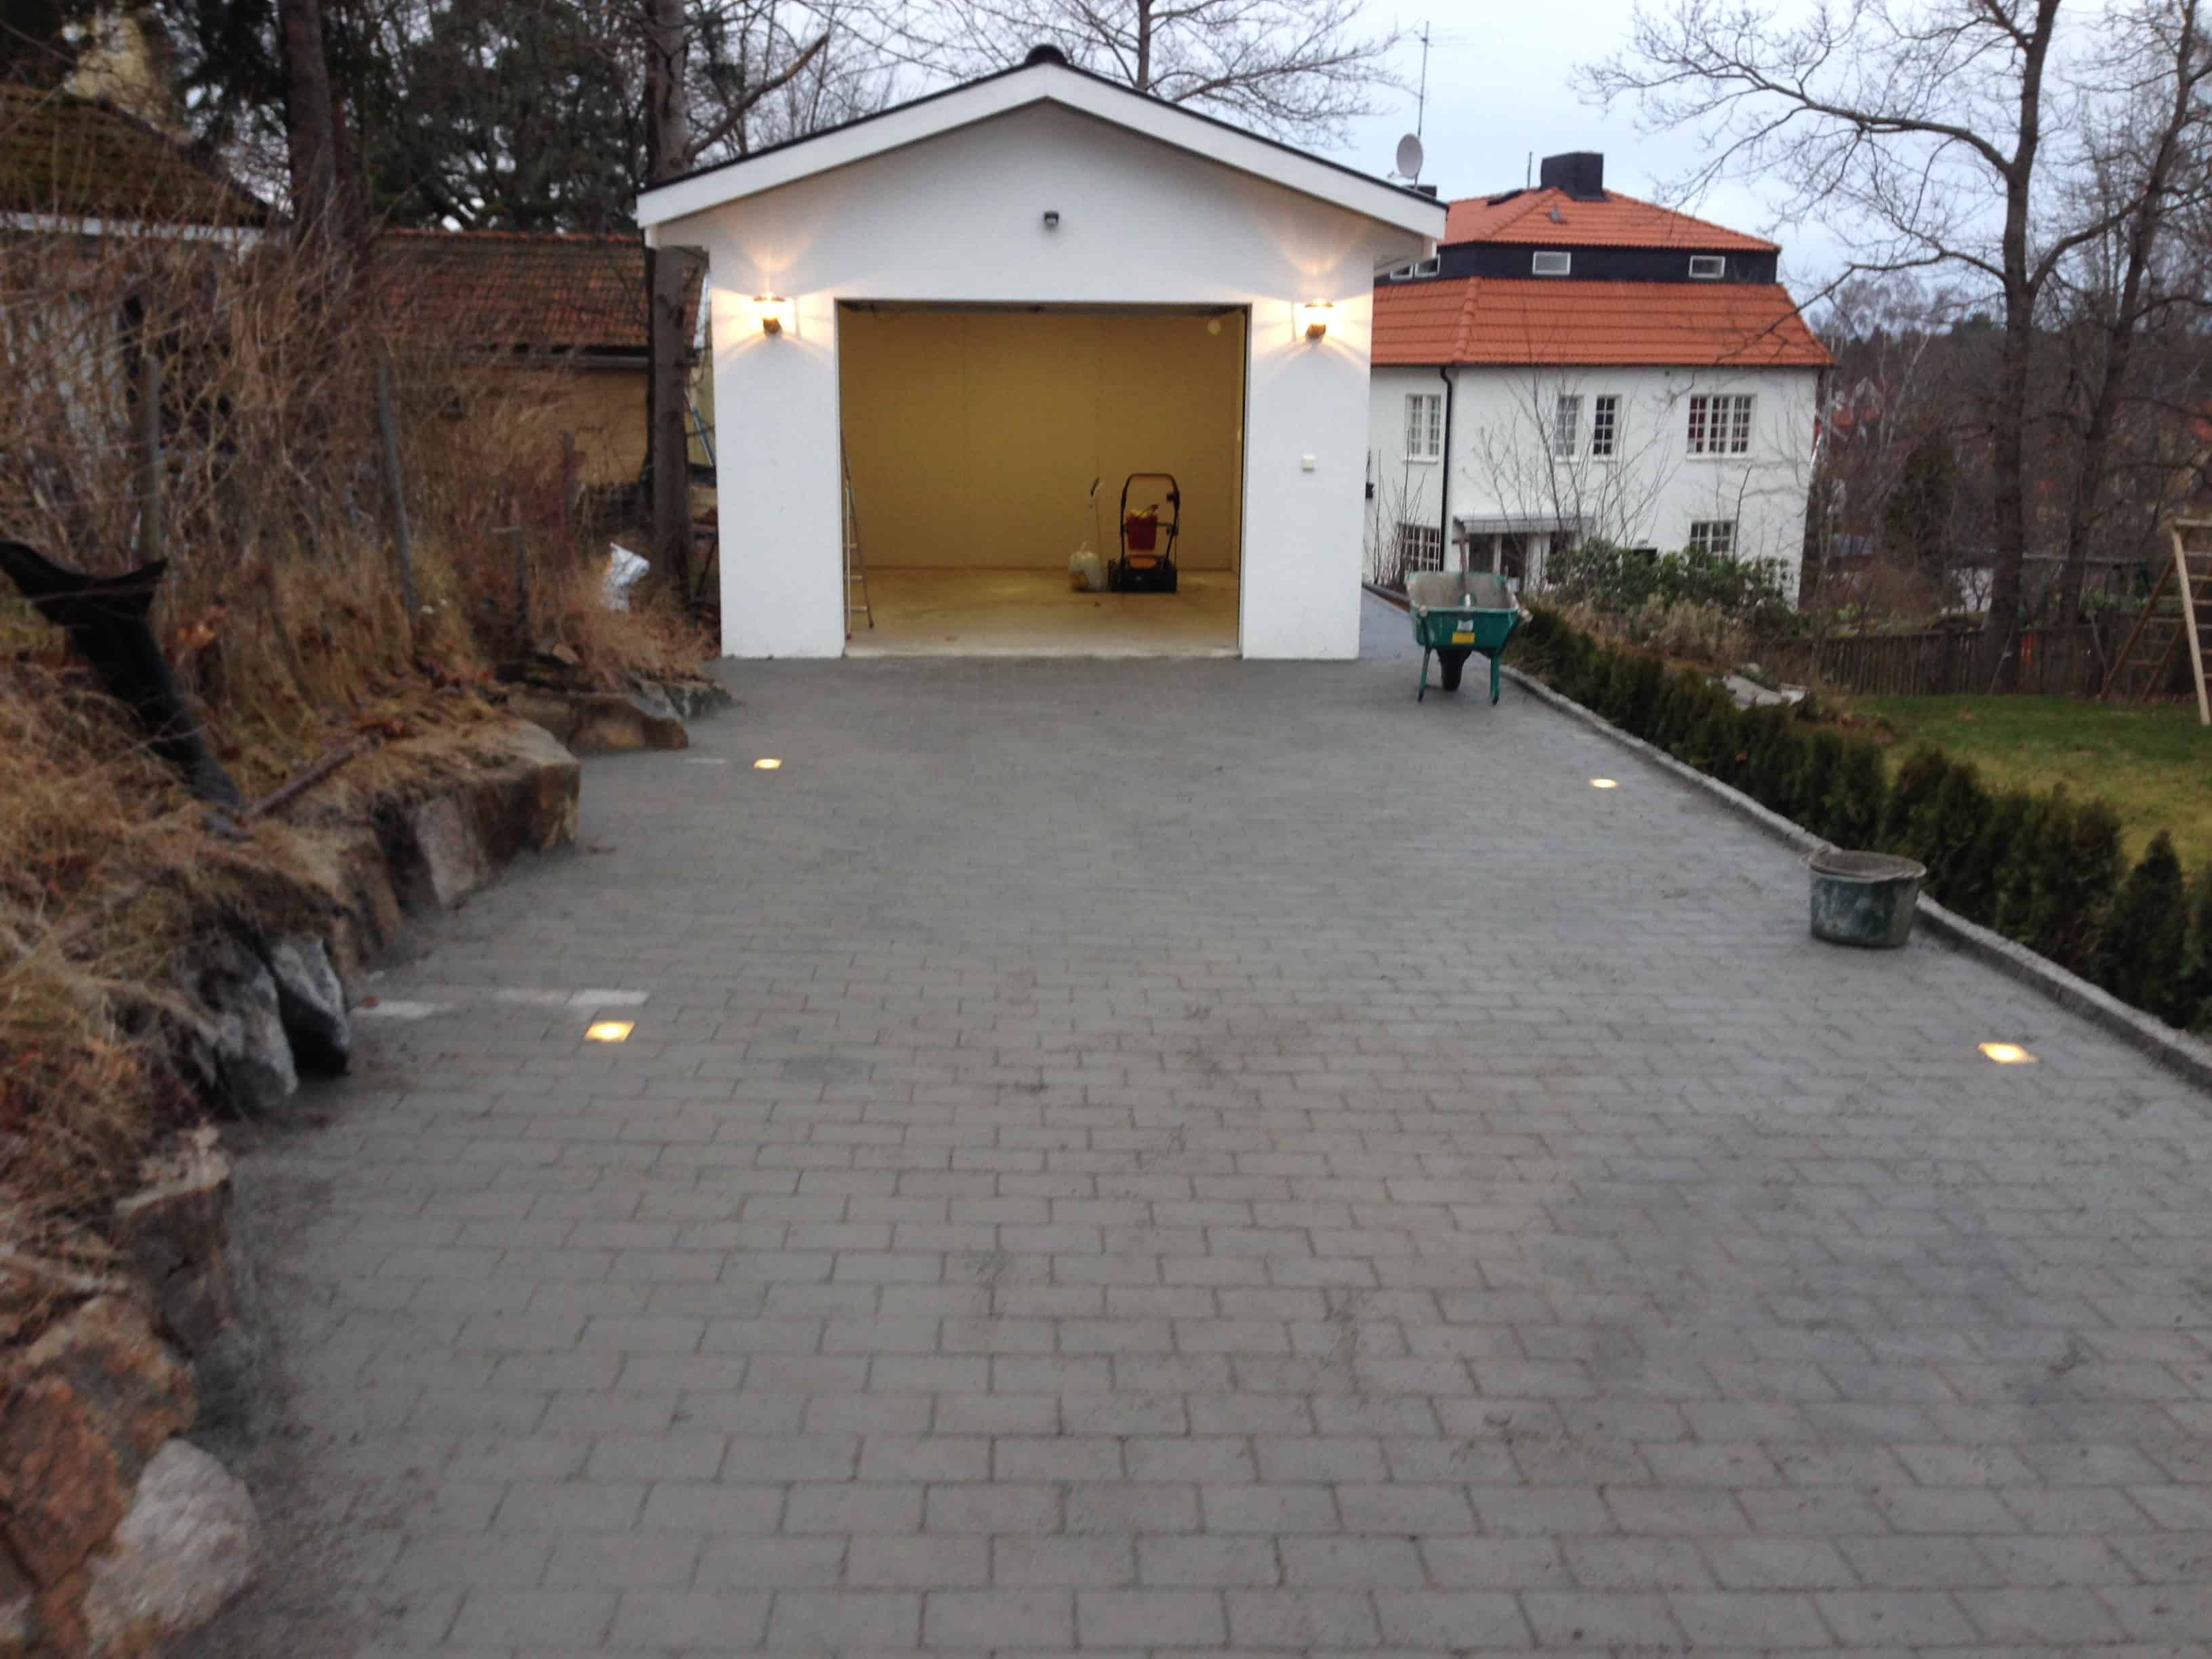 Referensjobb "Garageuppfart" utfört av Stockholms Bygg & Trädgårdsmästeri AB